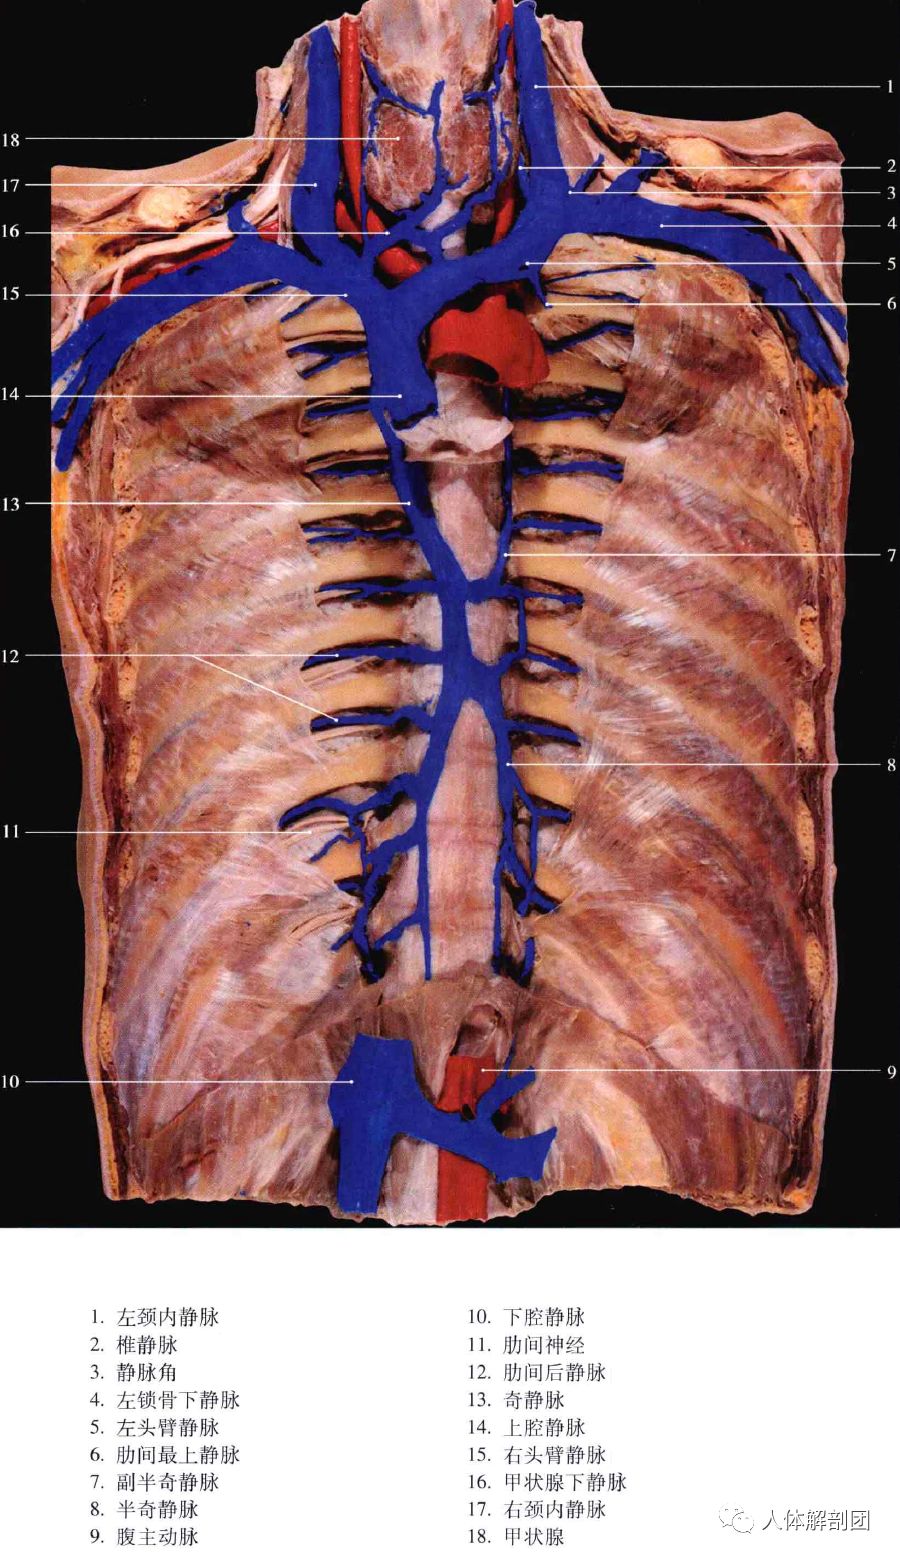 胸里是藏不住水的 胸部静脉 人体解剖团 微信公众号文章阅读 Wemp